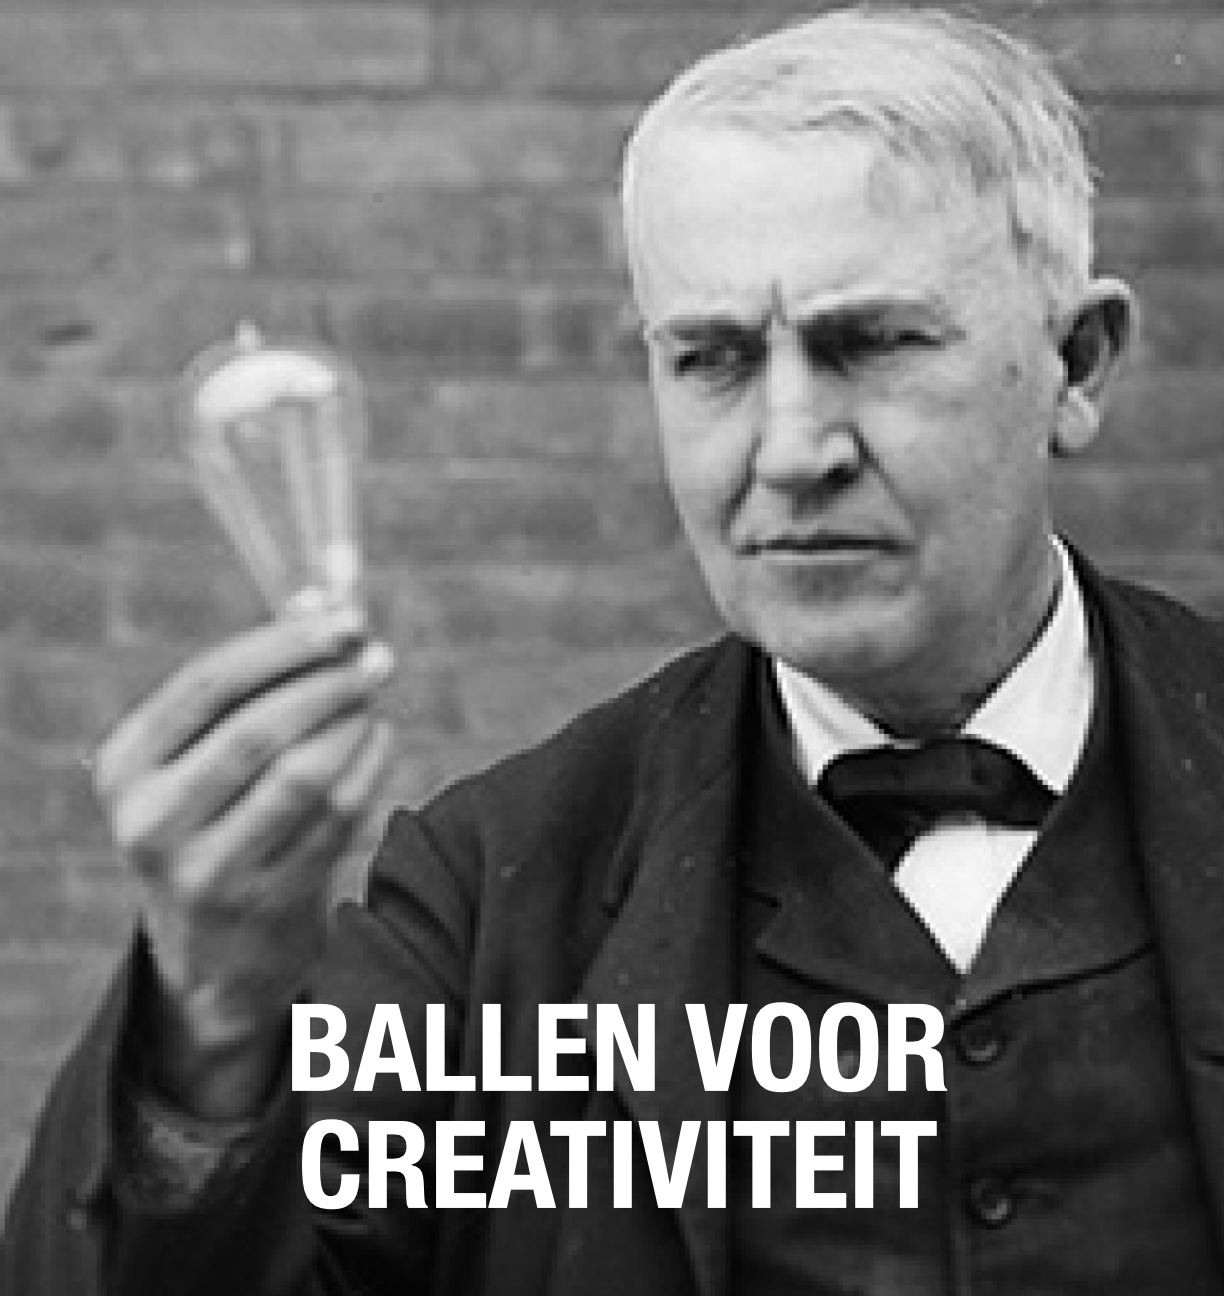 De ballen van Thomas Edison als bron van creativiteit